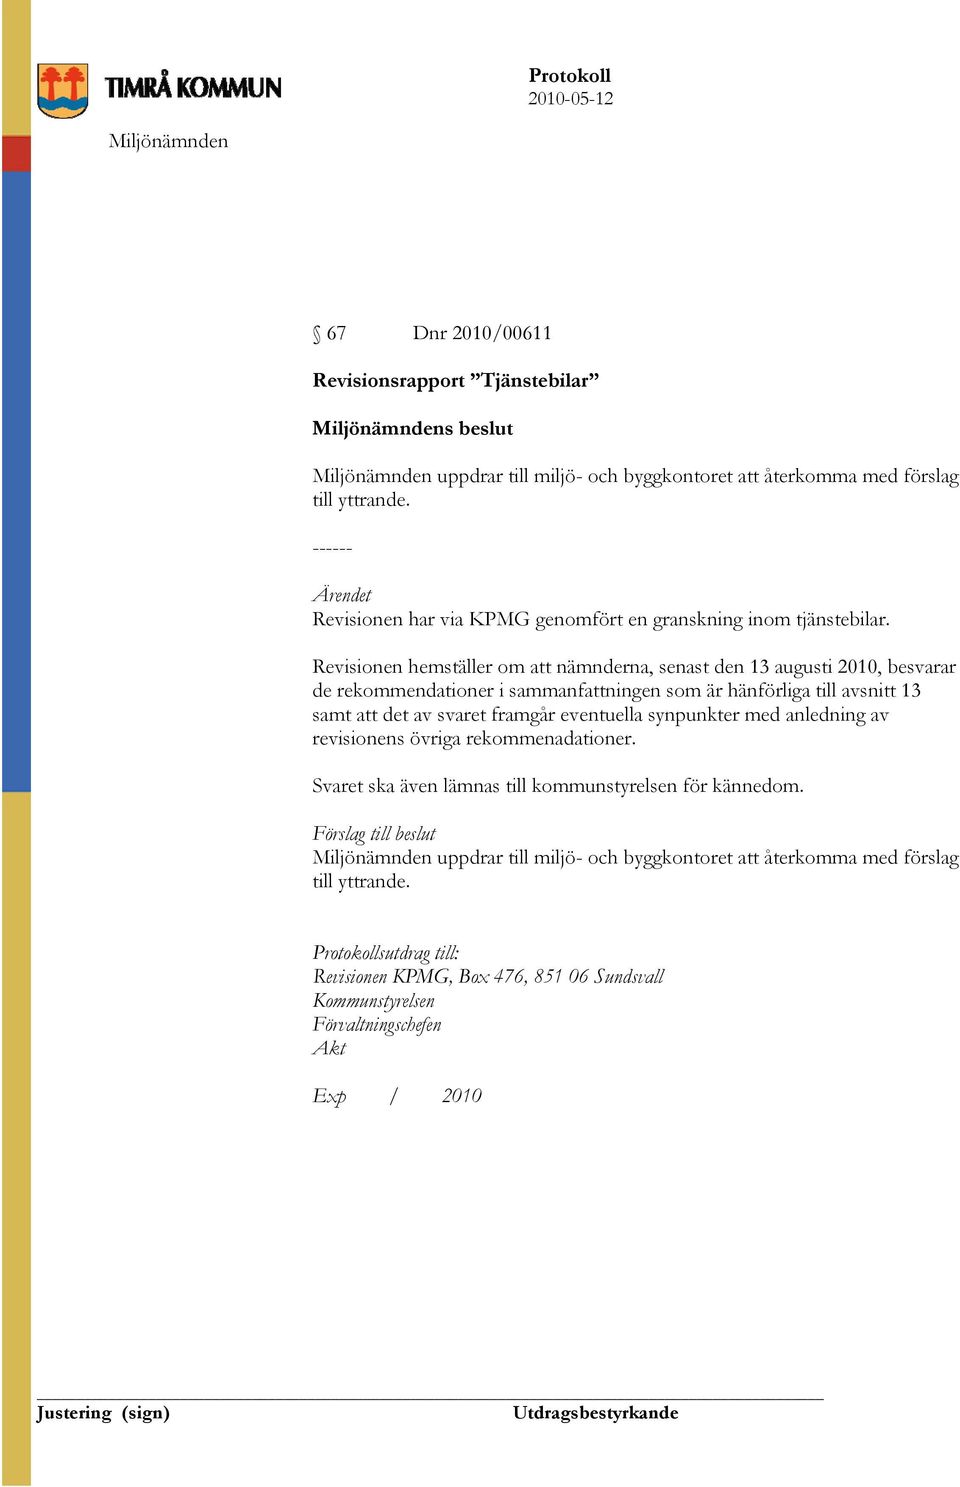 Revisionen hemställer om att nämnderna, senast den 13 augusti 2010, besvarar de rekommendationer i sammanfattningen som är hänförliga till avsnitt 13 samt att det av svaret framgår